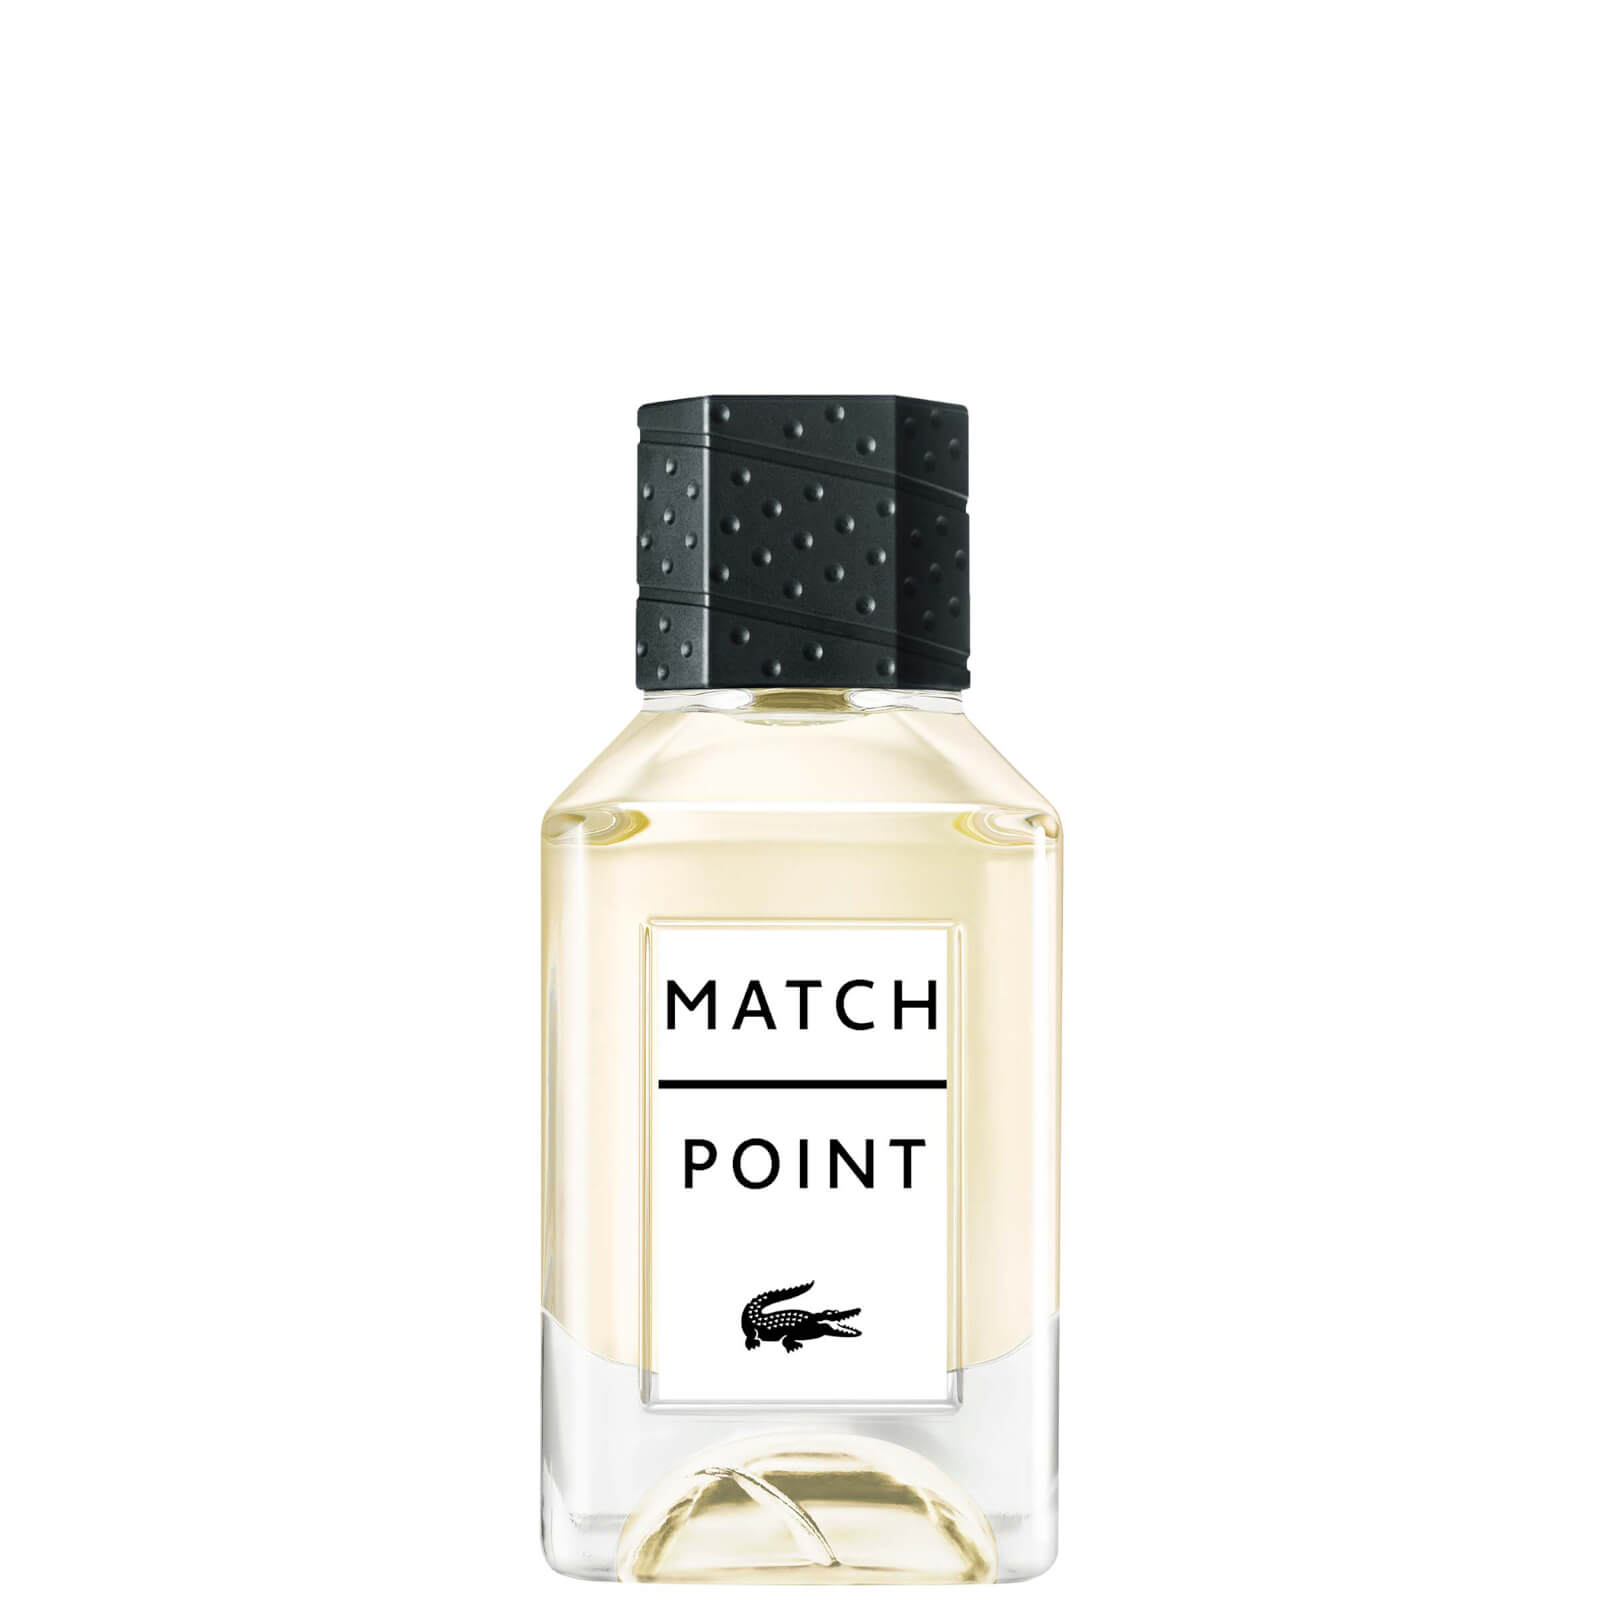 Photos - Men's Fragrance Lacoste Match Point Eau de Toilette  - 50ml 99350146198 (various sizes)